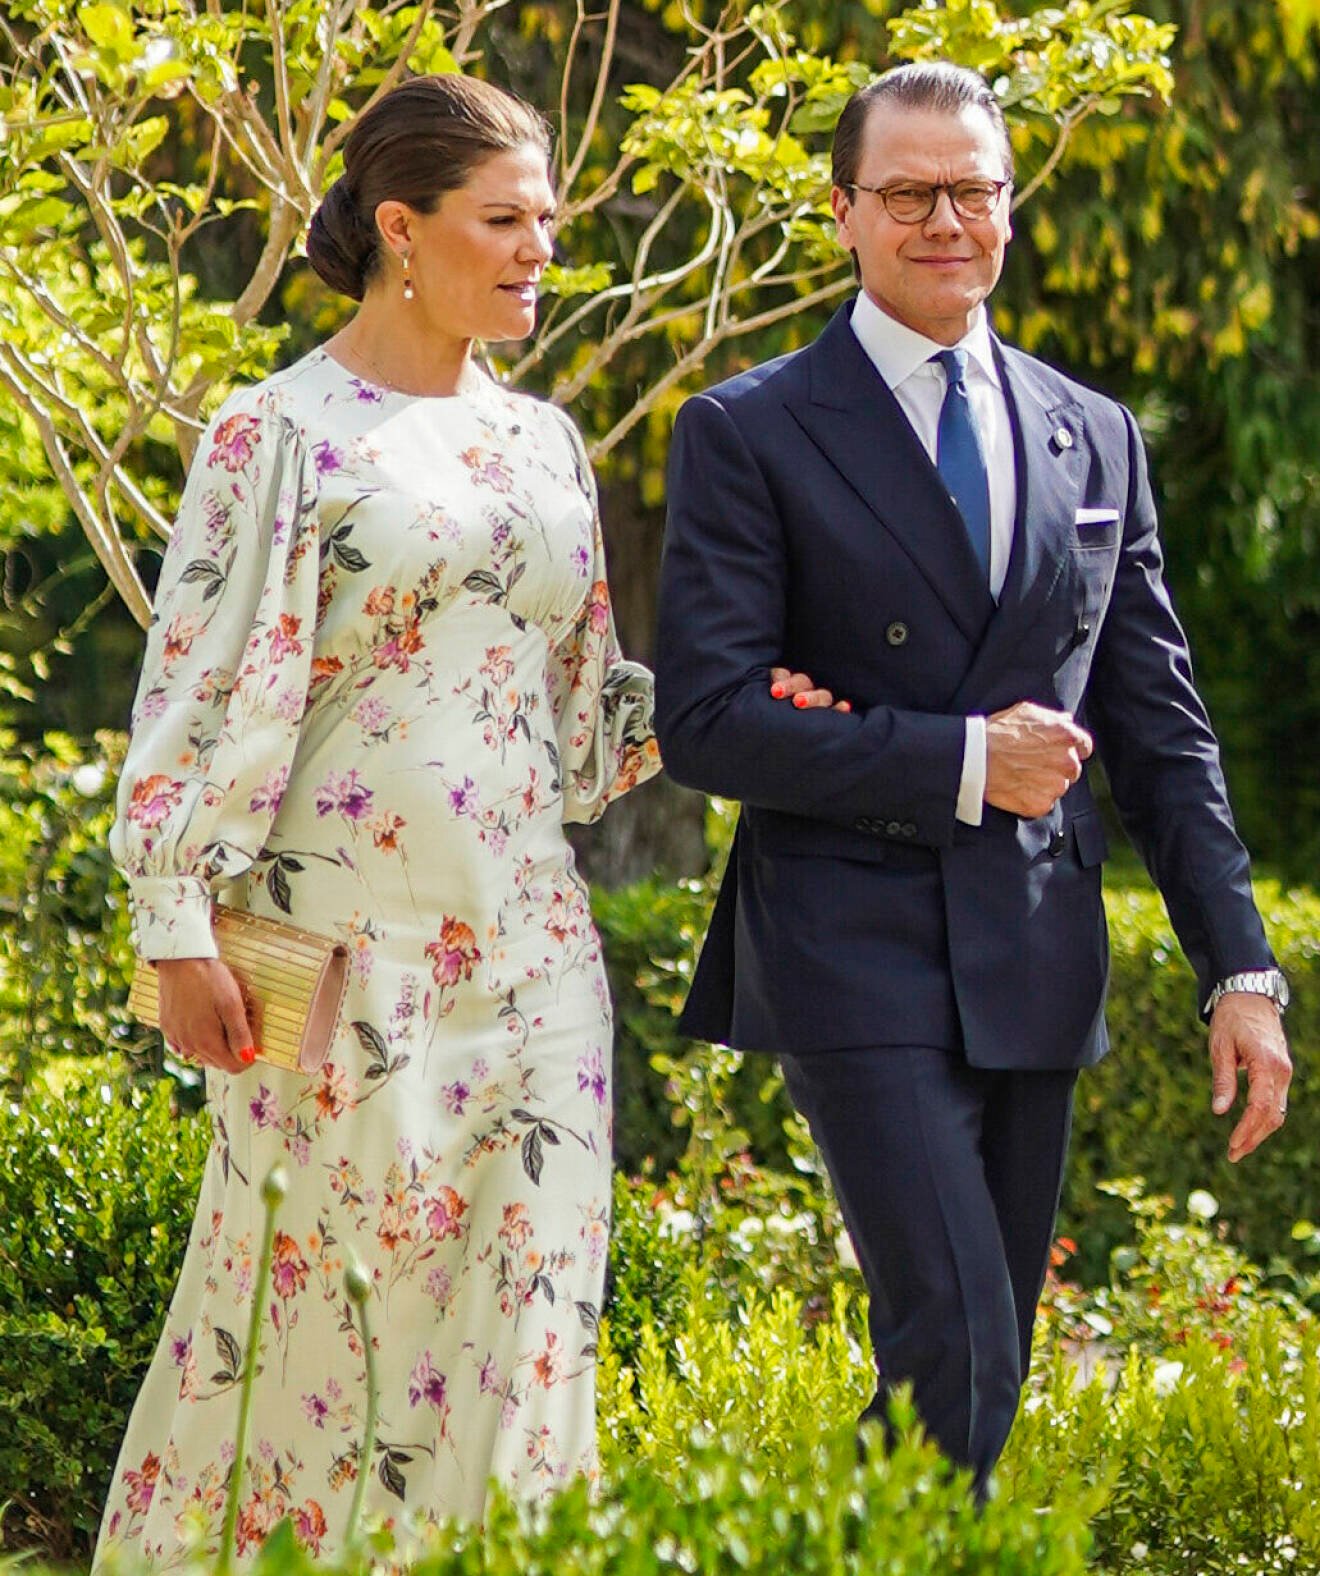 Bröllop i Jordanien 2023: Kronprinsessan Victoria klädd i en blommig klänning från By Malina